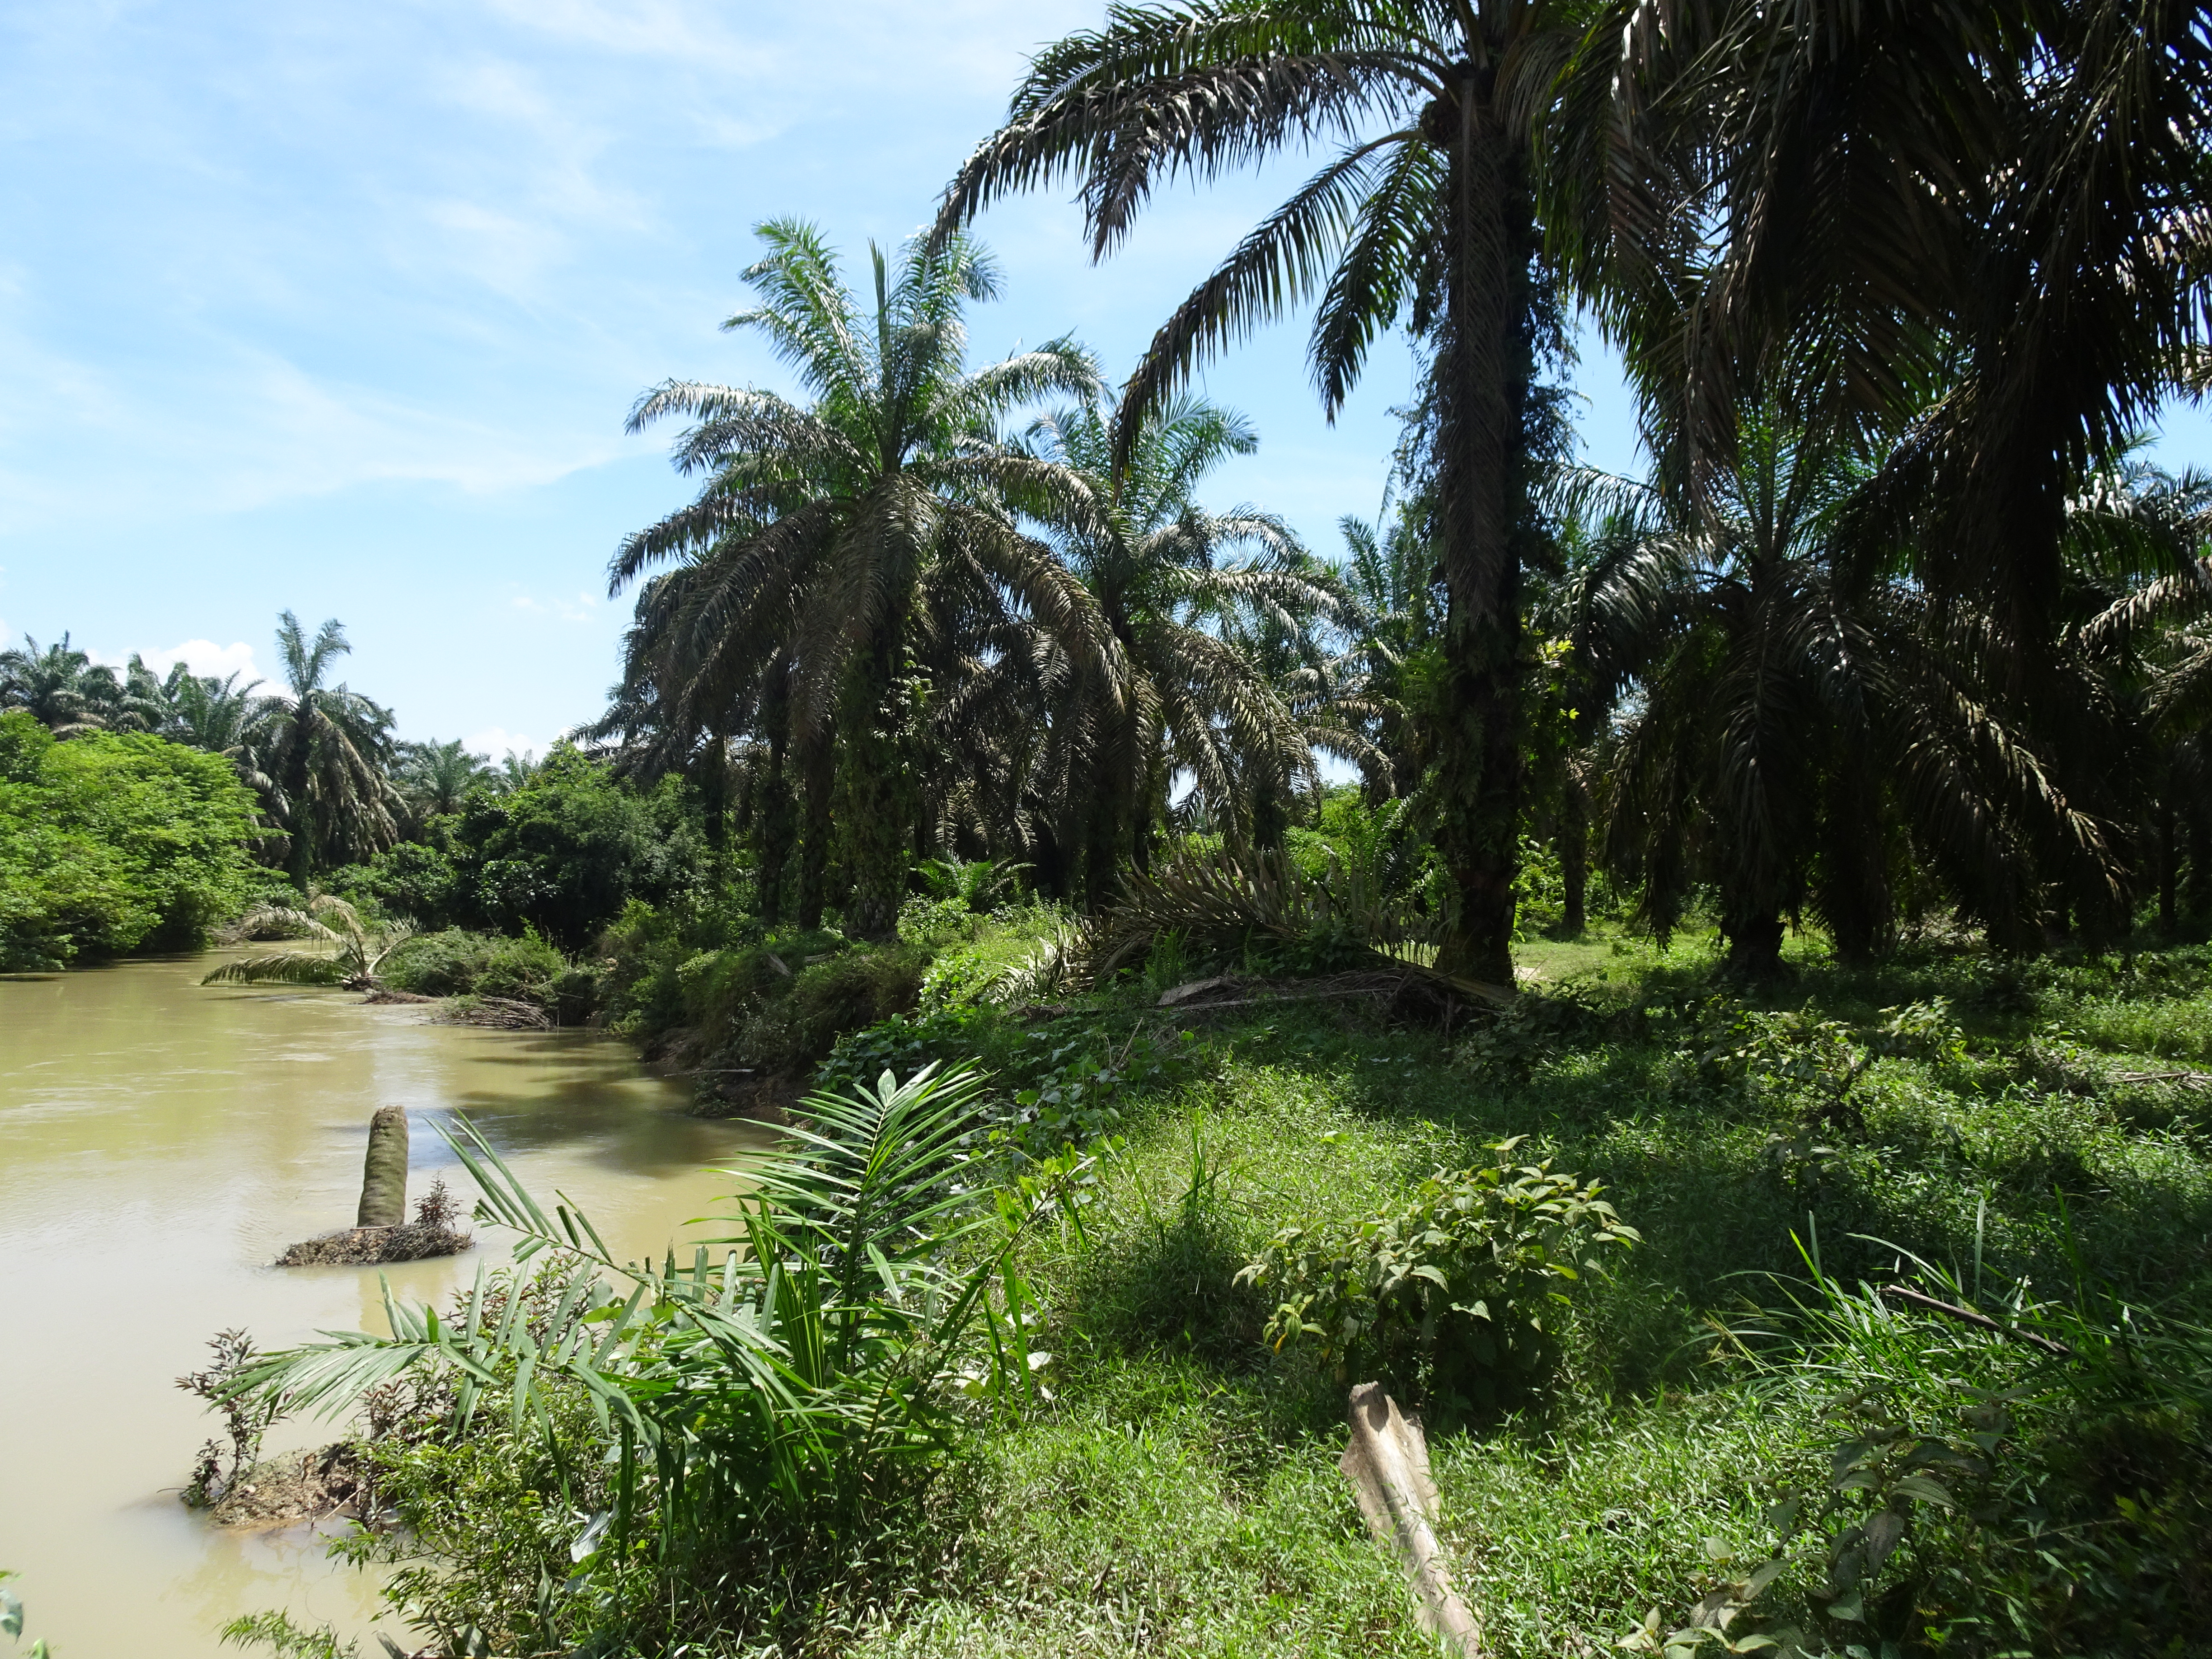 Hamparan sawit milik PT Citra Riau Sarana berumur 25 tahun yang ditanam di riparian sungai. Foto diambil pada titik koordinat S0°12'48.57